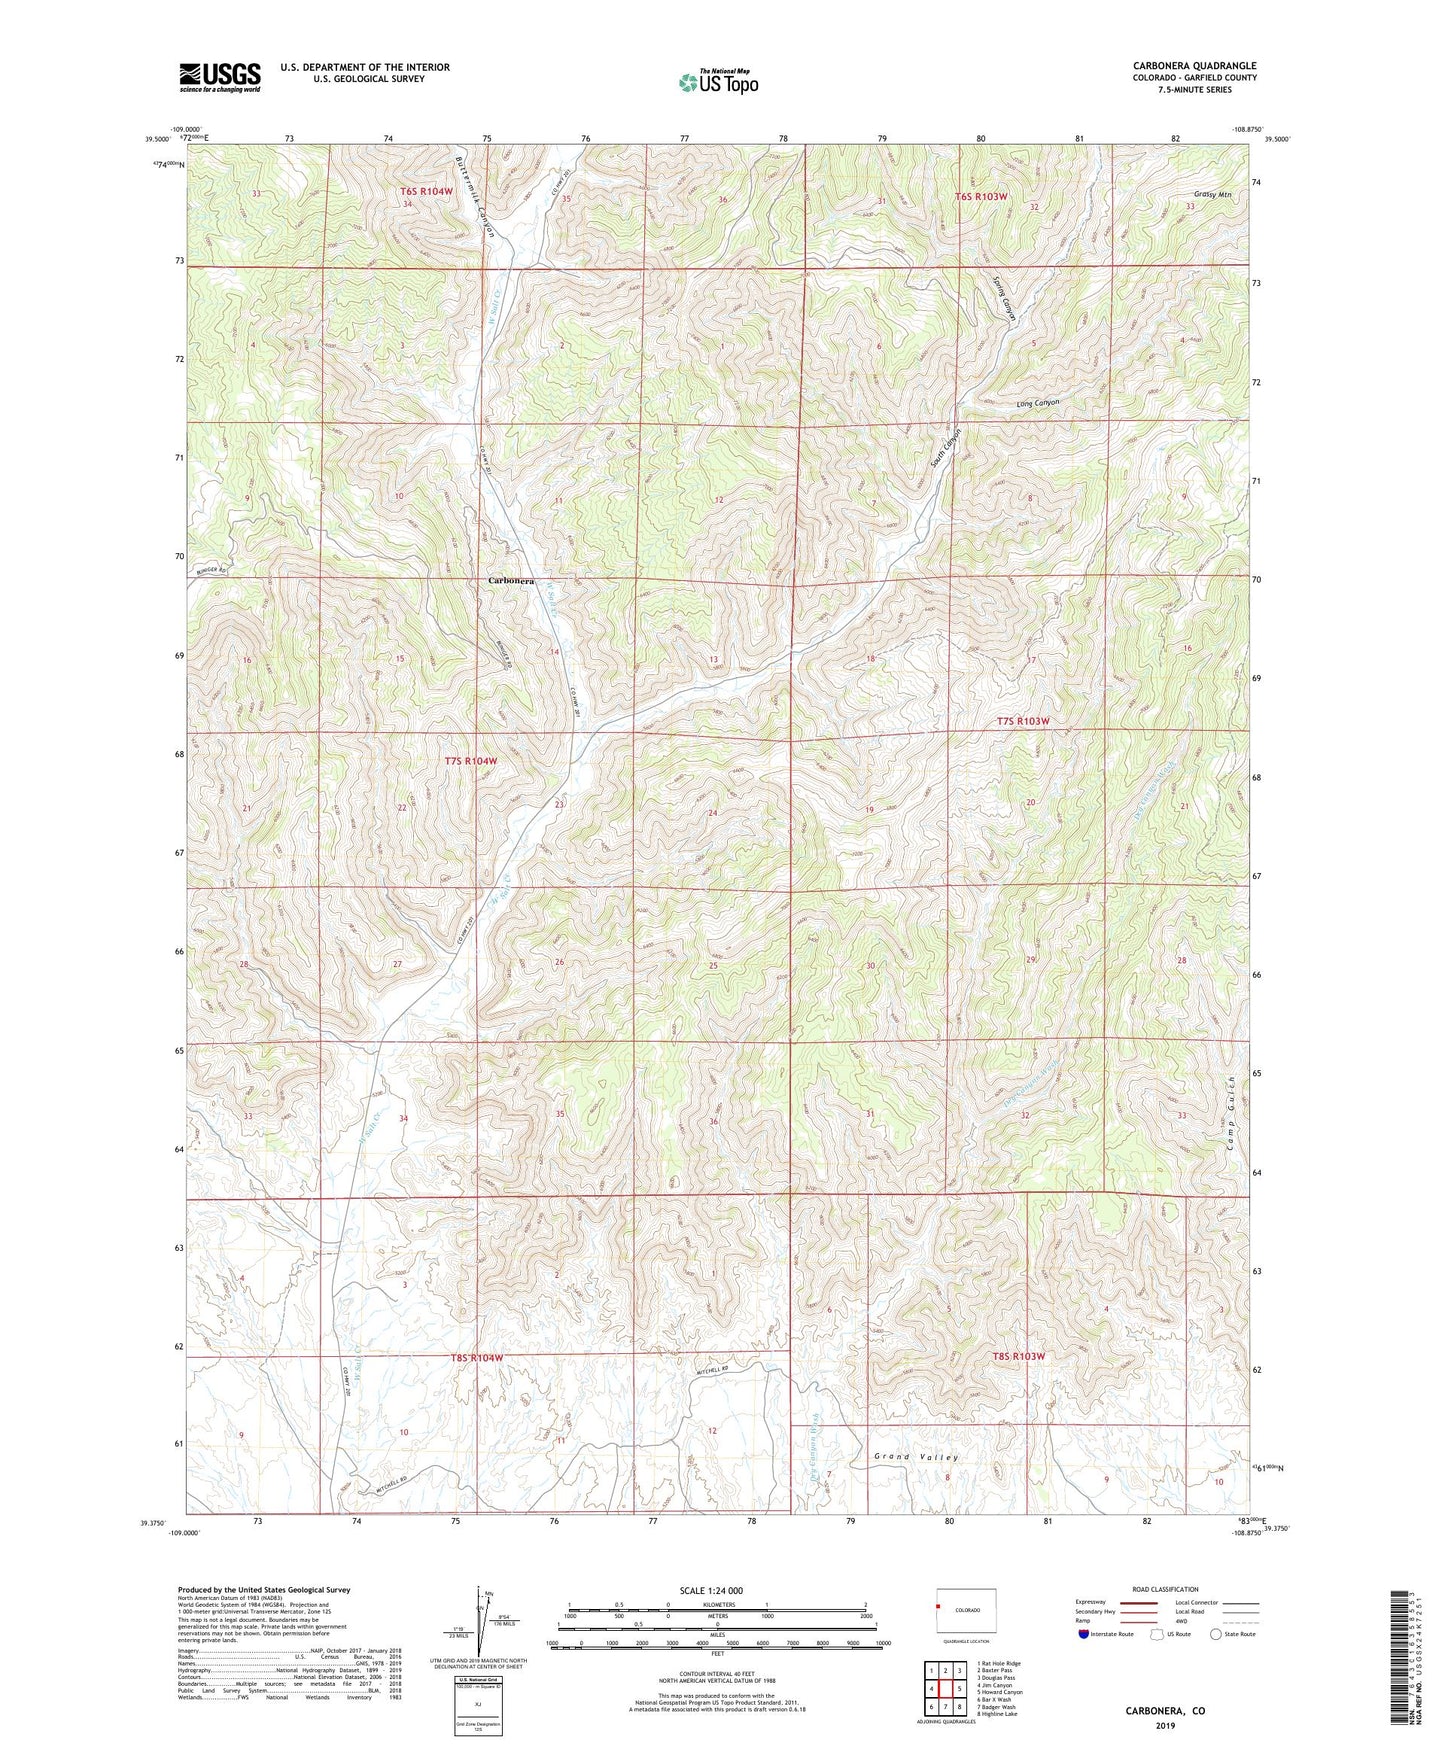 Carbonera Colorado US Topo Map Image